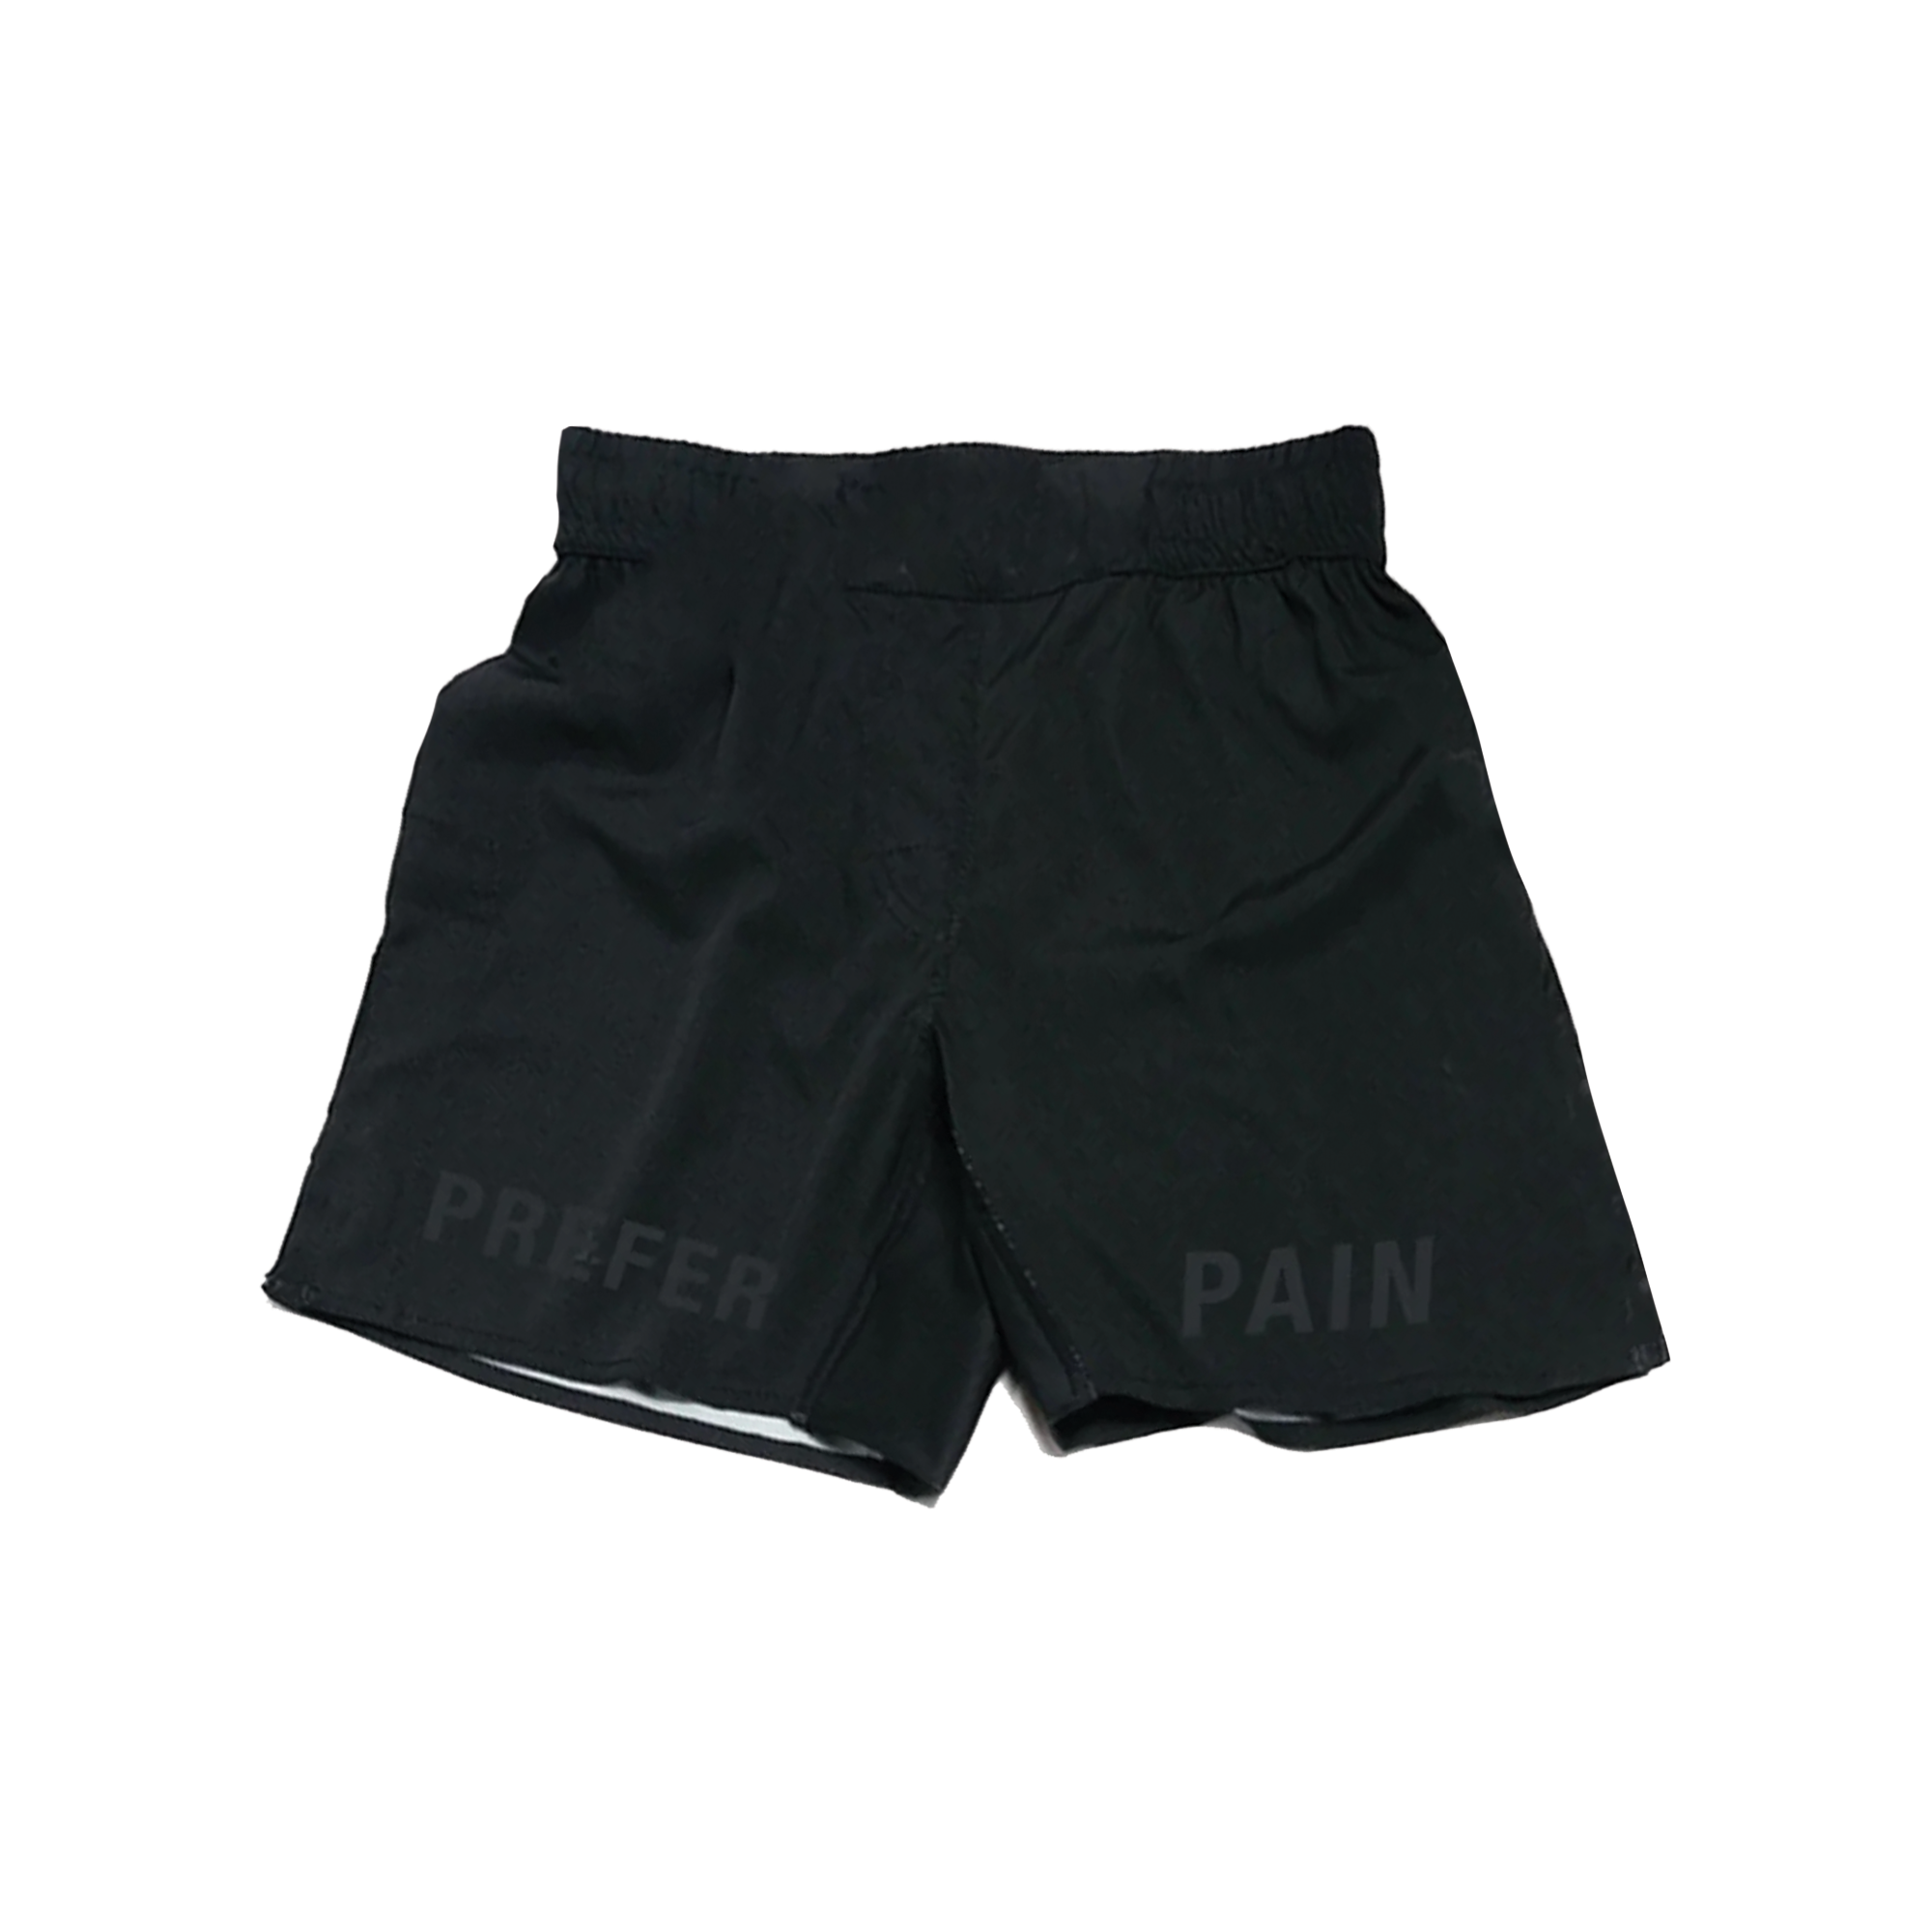 Blackout Pain Cross Combat Shorts